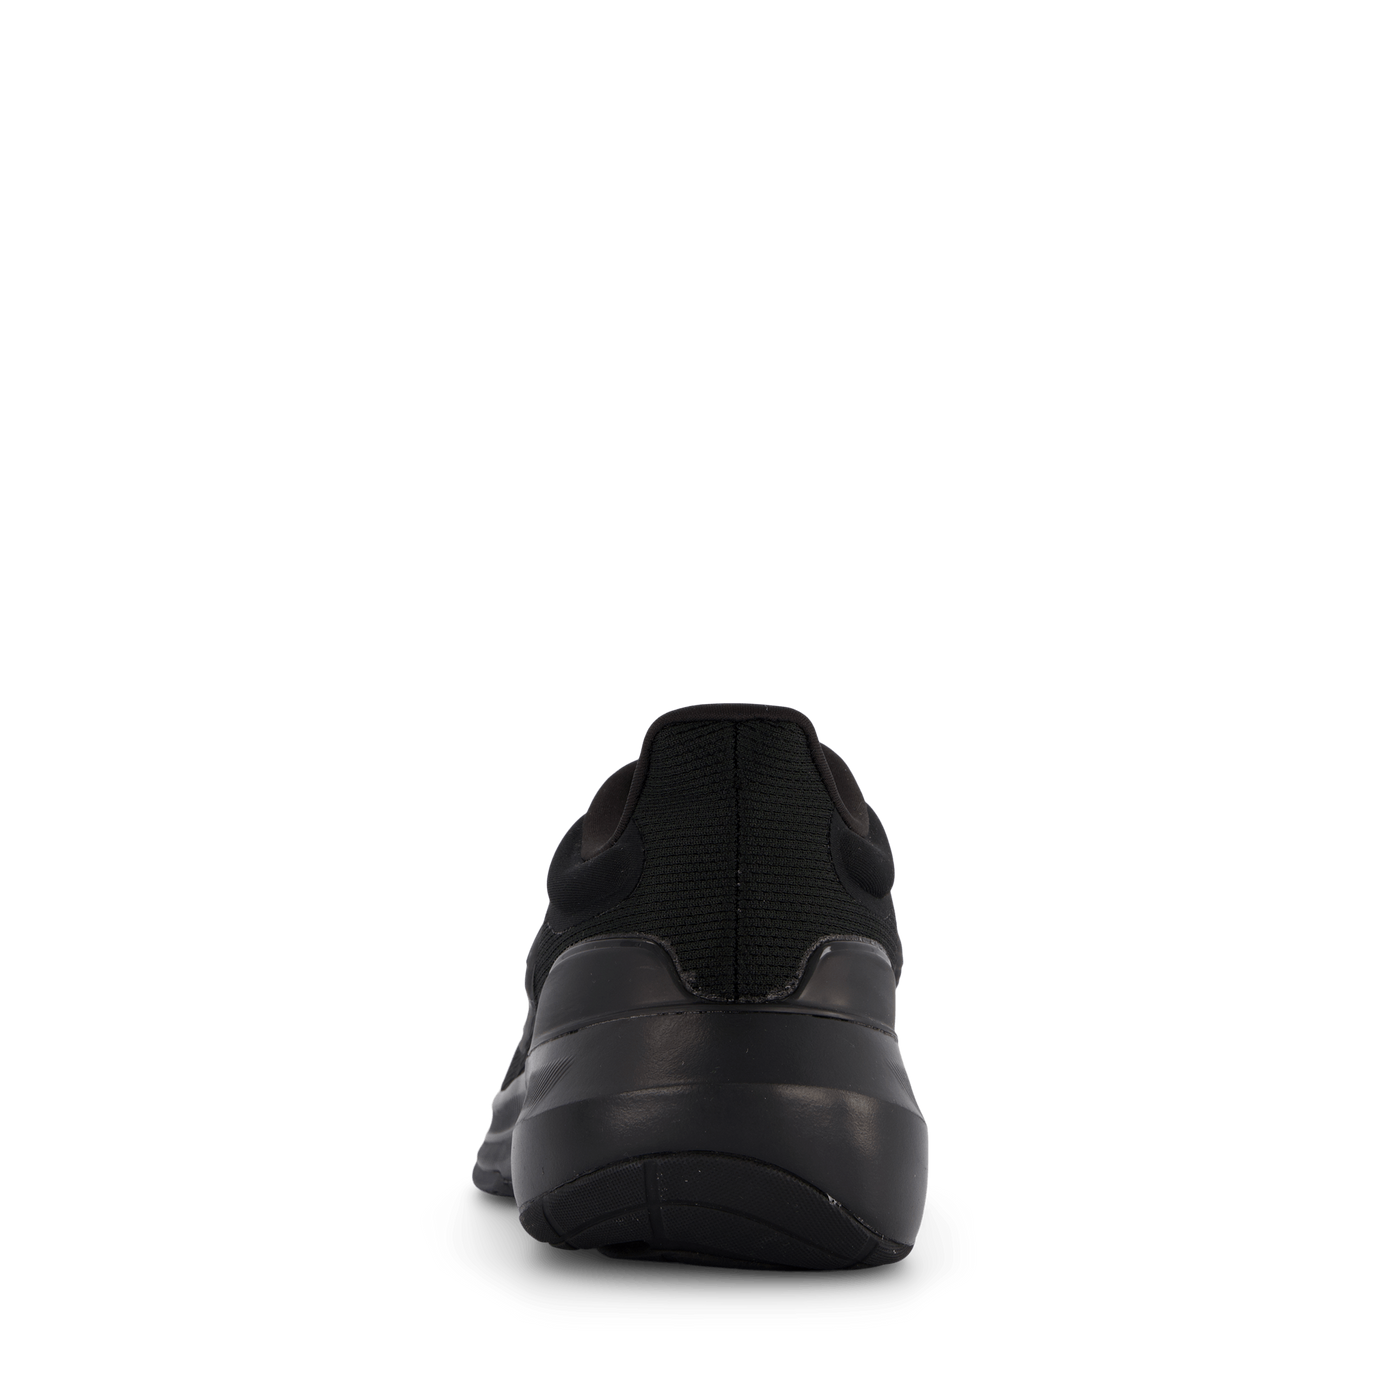 Ultrabounce Shoes Core Black / Core Black / Carbon